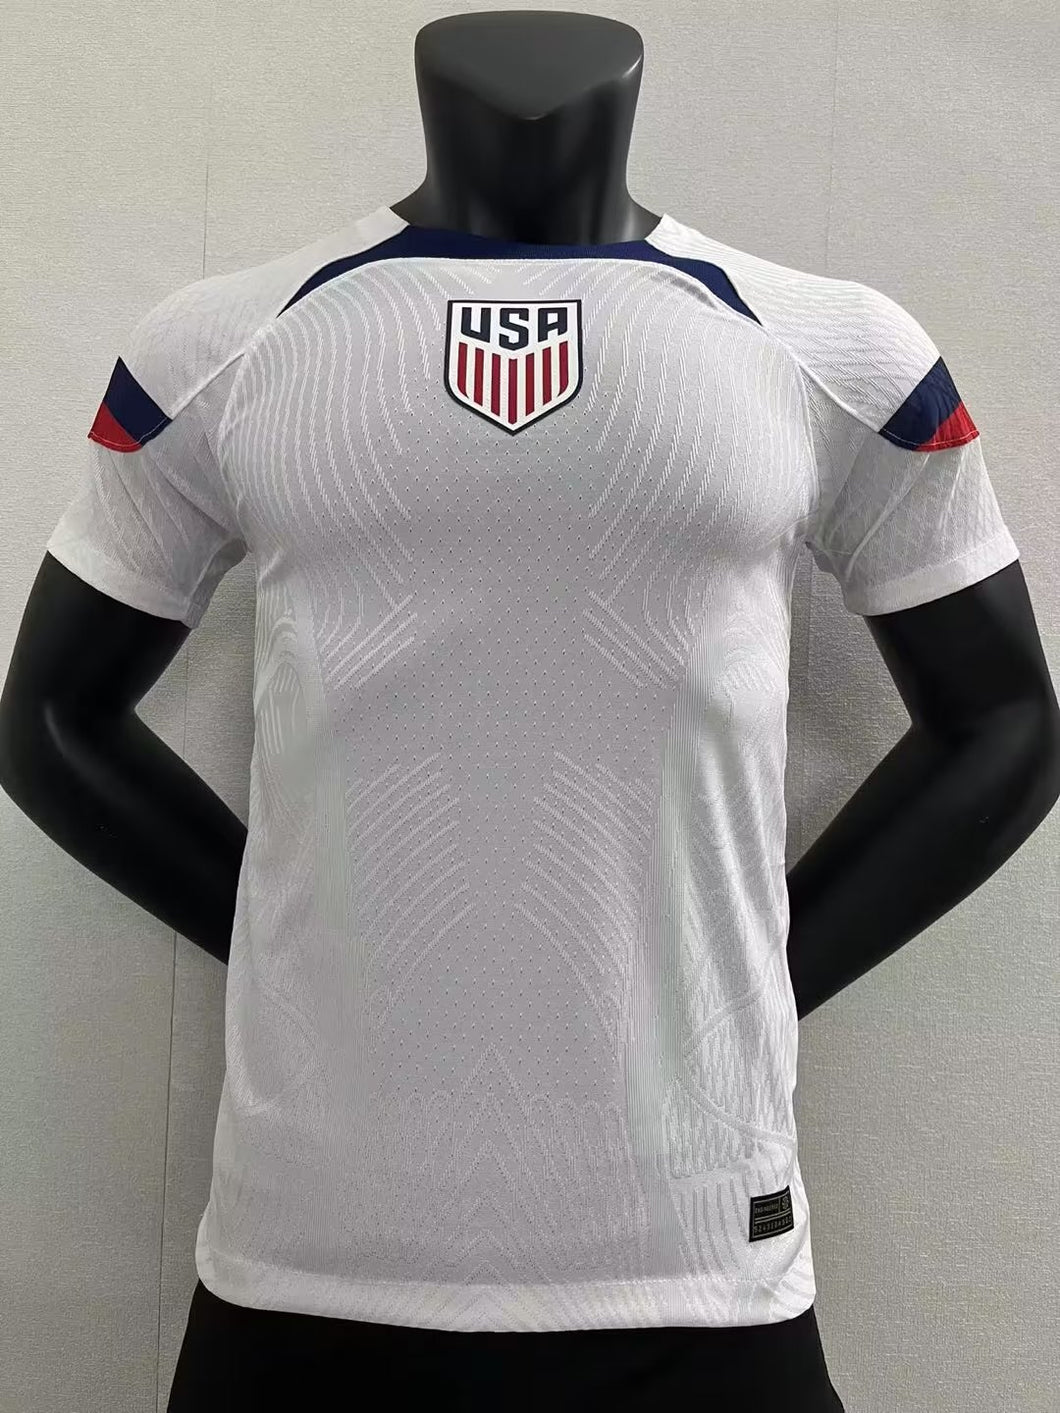 22/23 USA World Cup Home kit